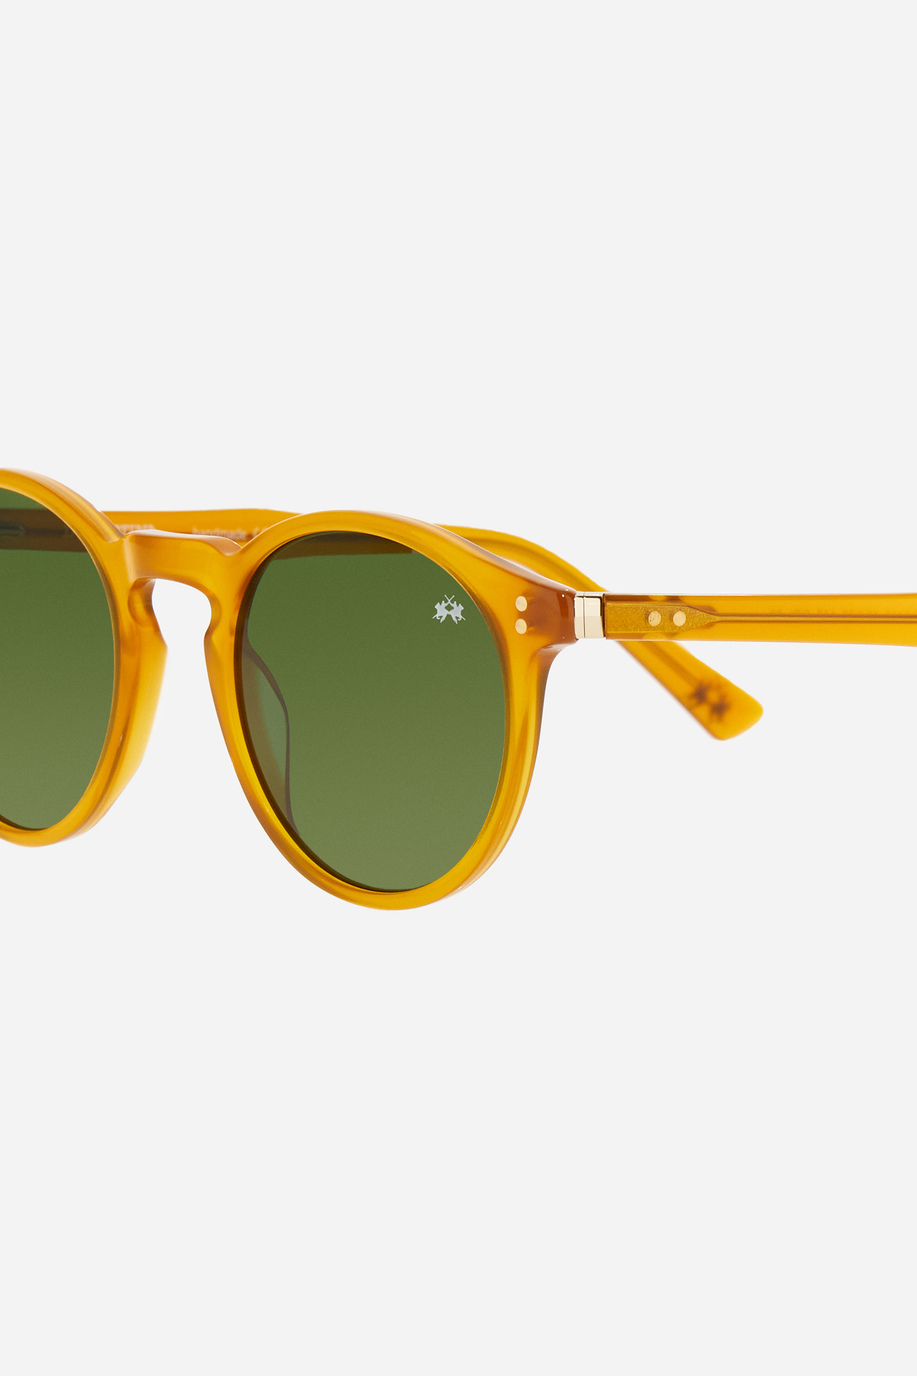 Round model men's sunglasses - Preview | La Martina - Official Online Shop